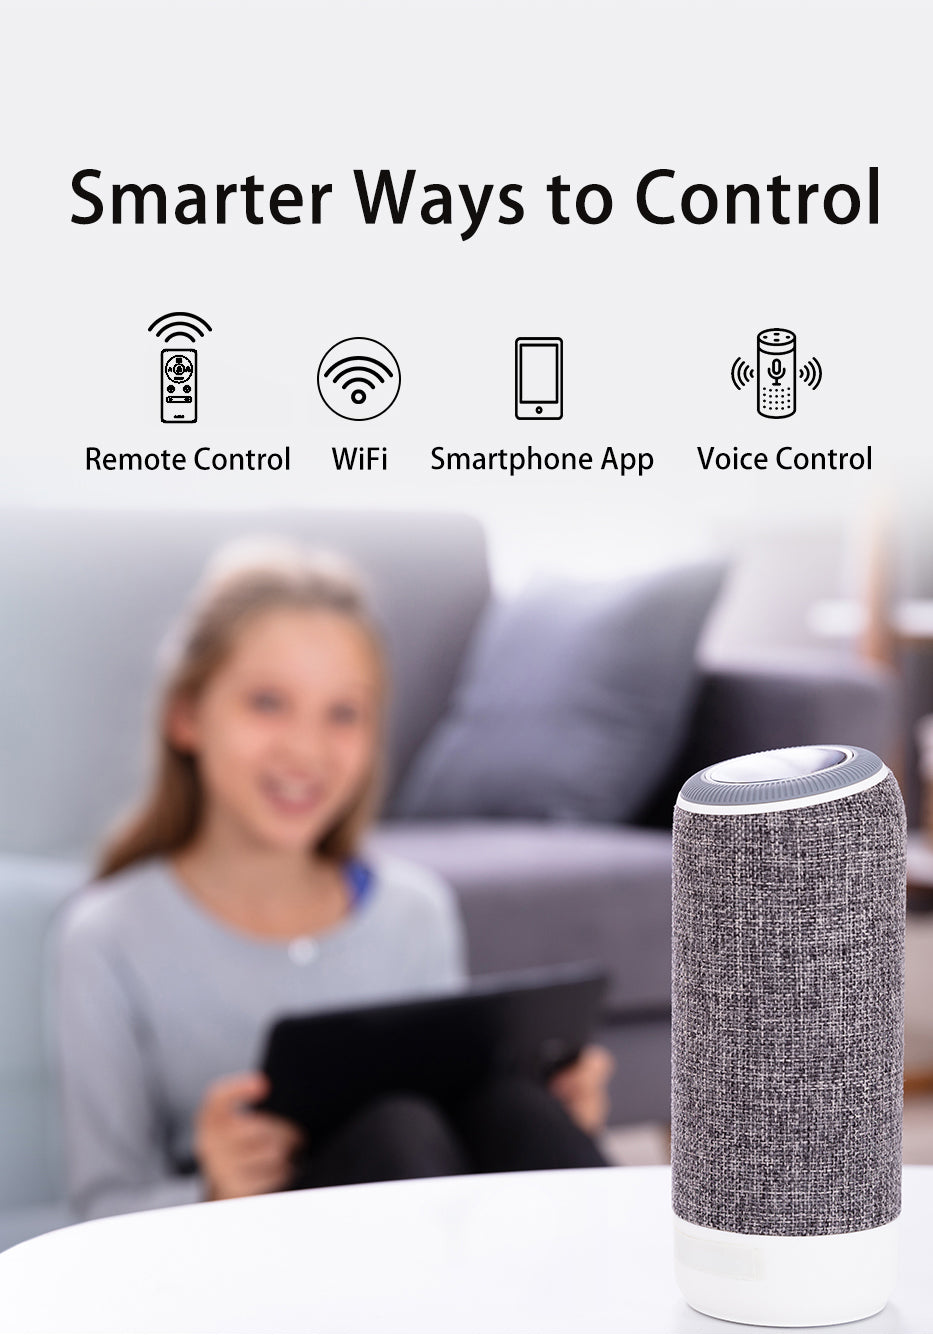 Carro-Smafan-Cadiz-52''-Smart-Ceiling-Fan-with-Remote-Smart-Features-Convenient-Control-Voice-Assistant-Wifi-Phone-App.